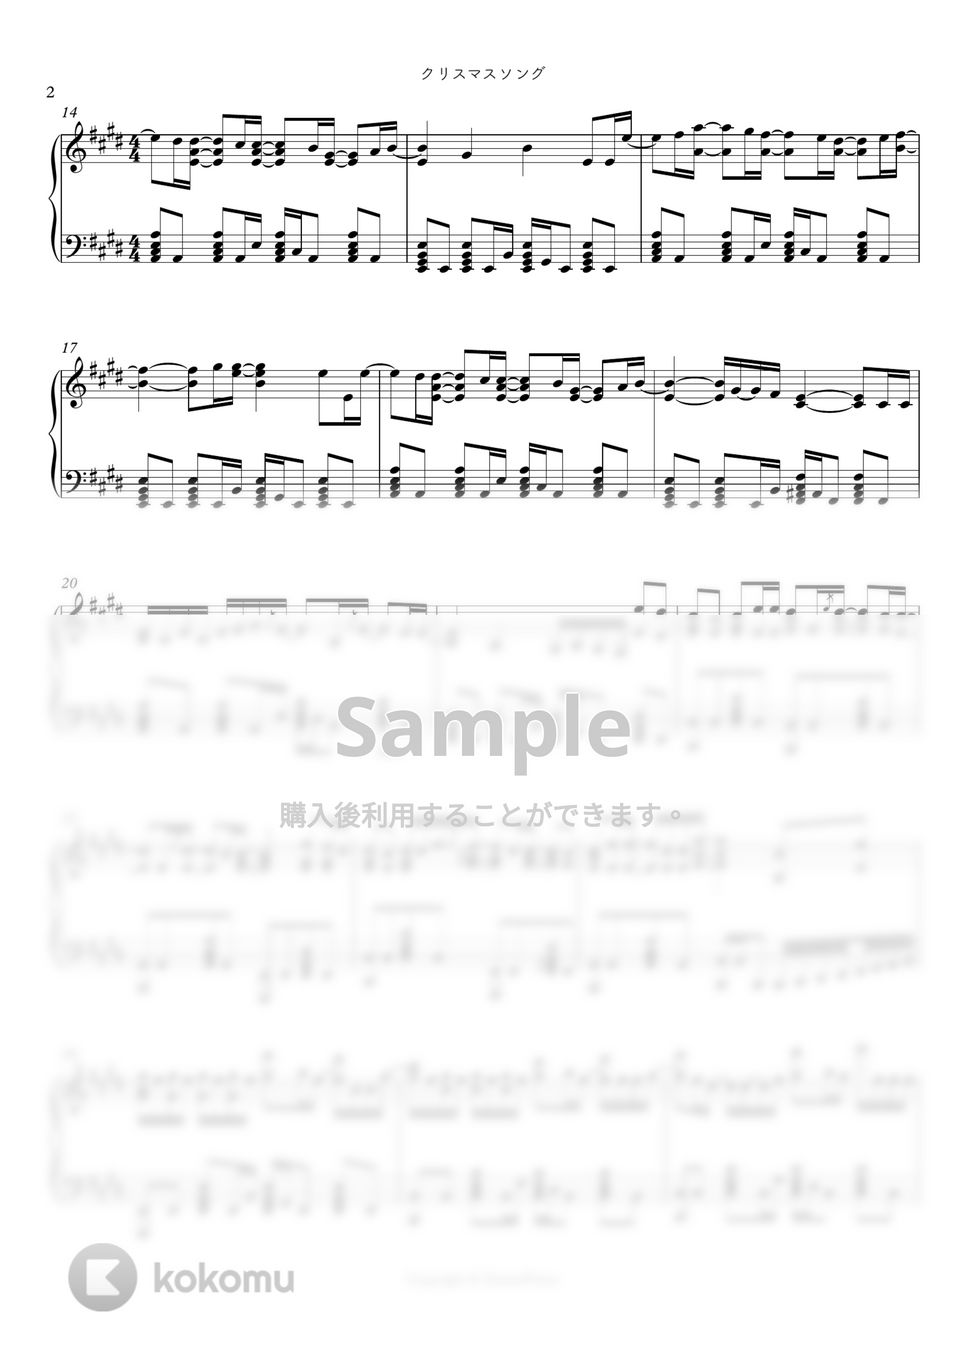 back number - クリスマスソング（５時から９時まで〜私に恋したお坊さん〜OST） by シビウォルピアノ